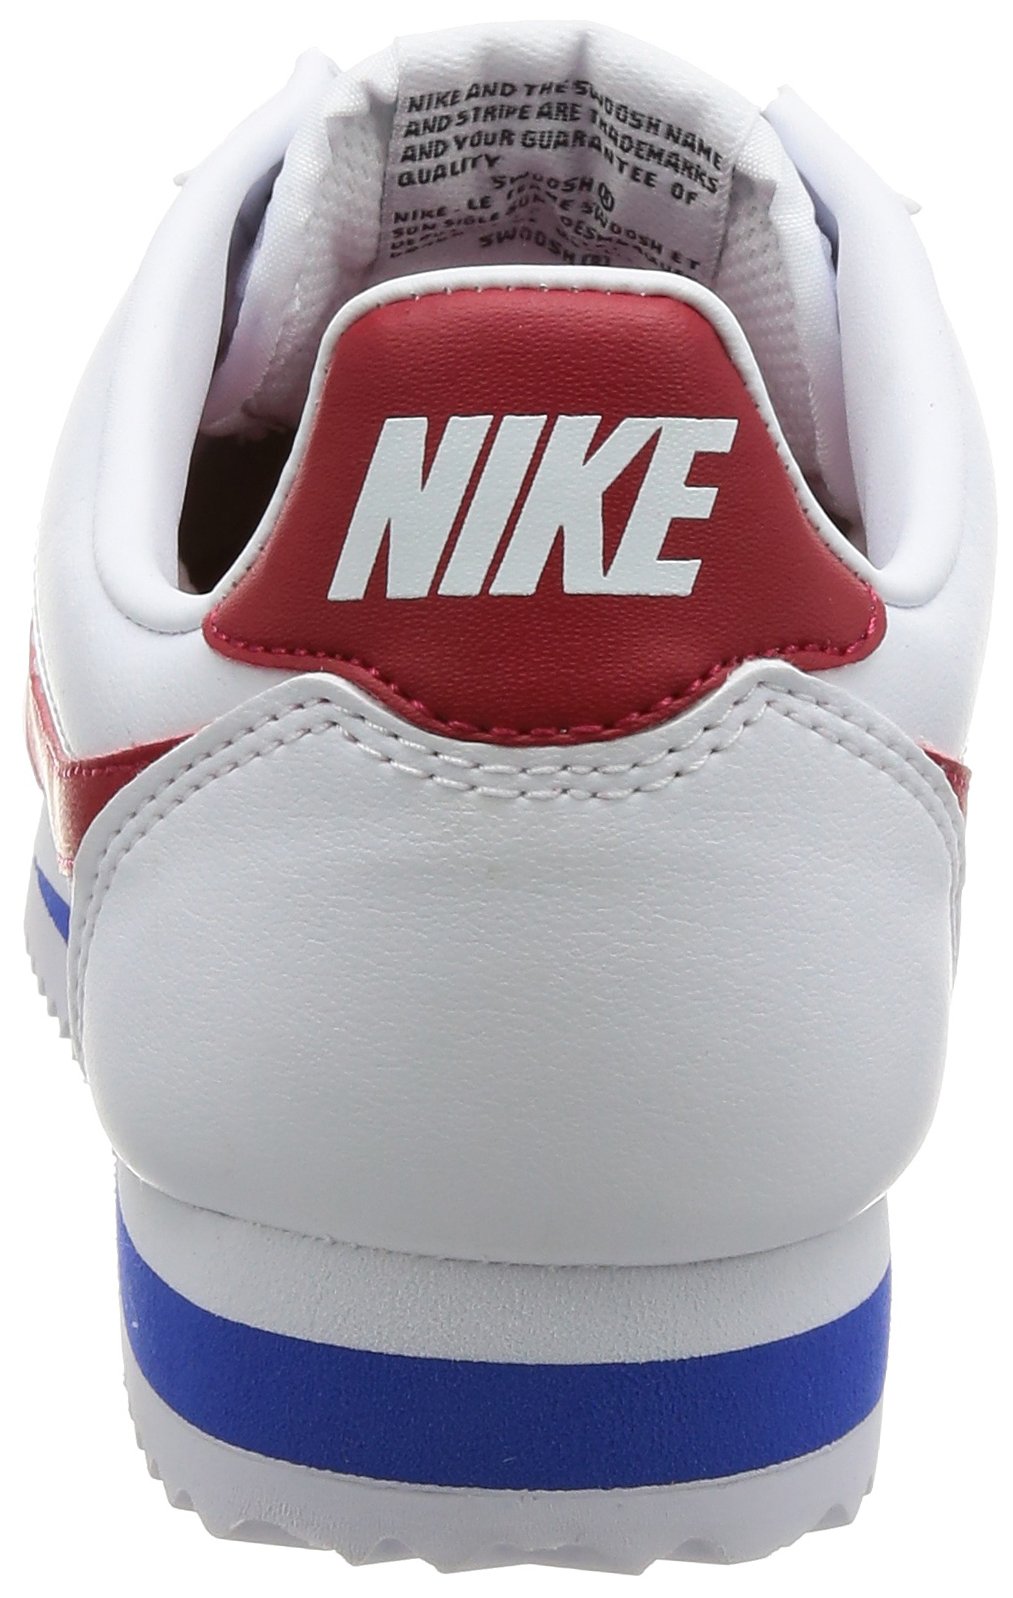 Nike Men's Free Rn Running Shoes